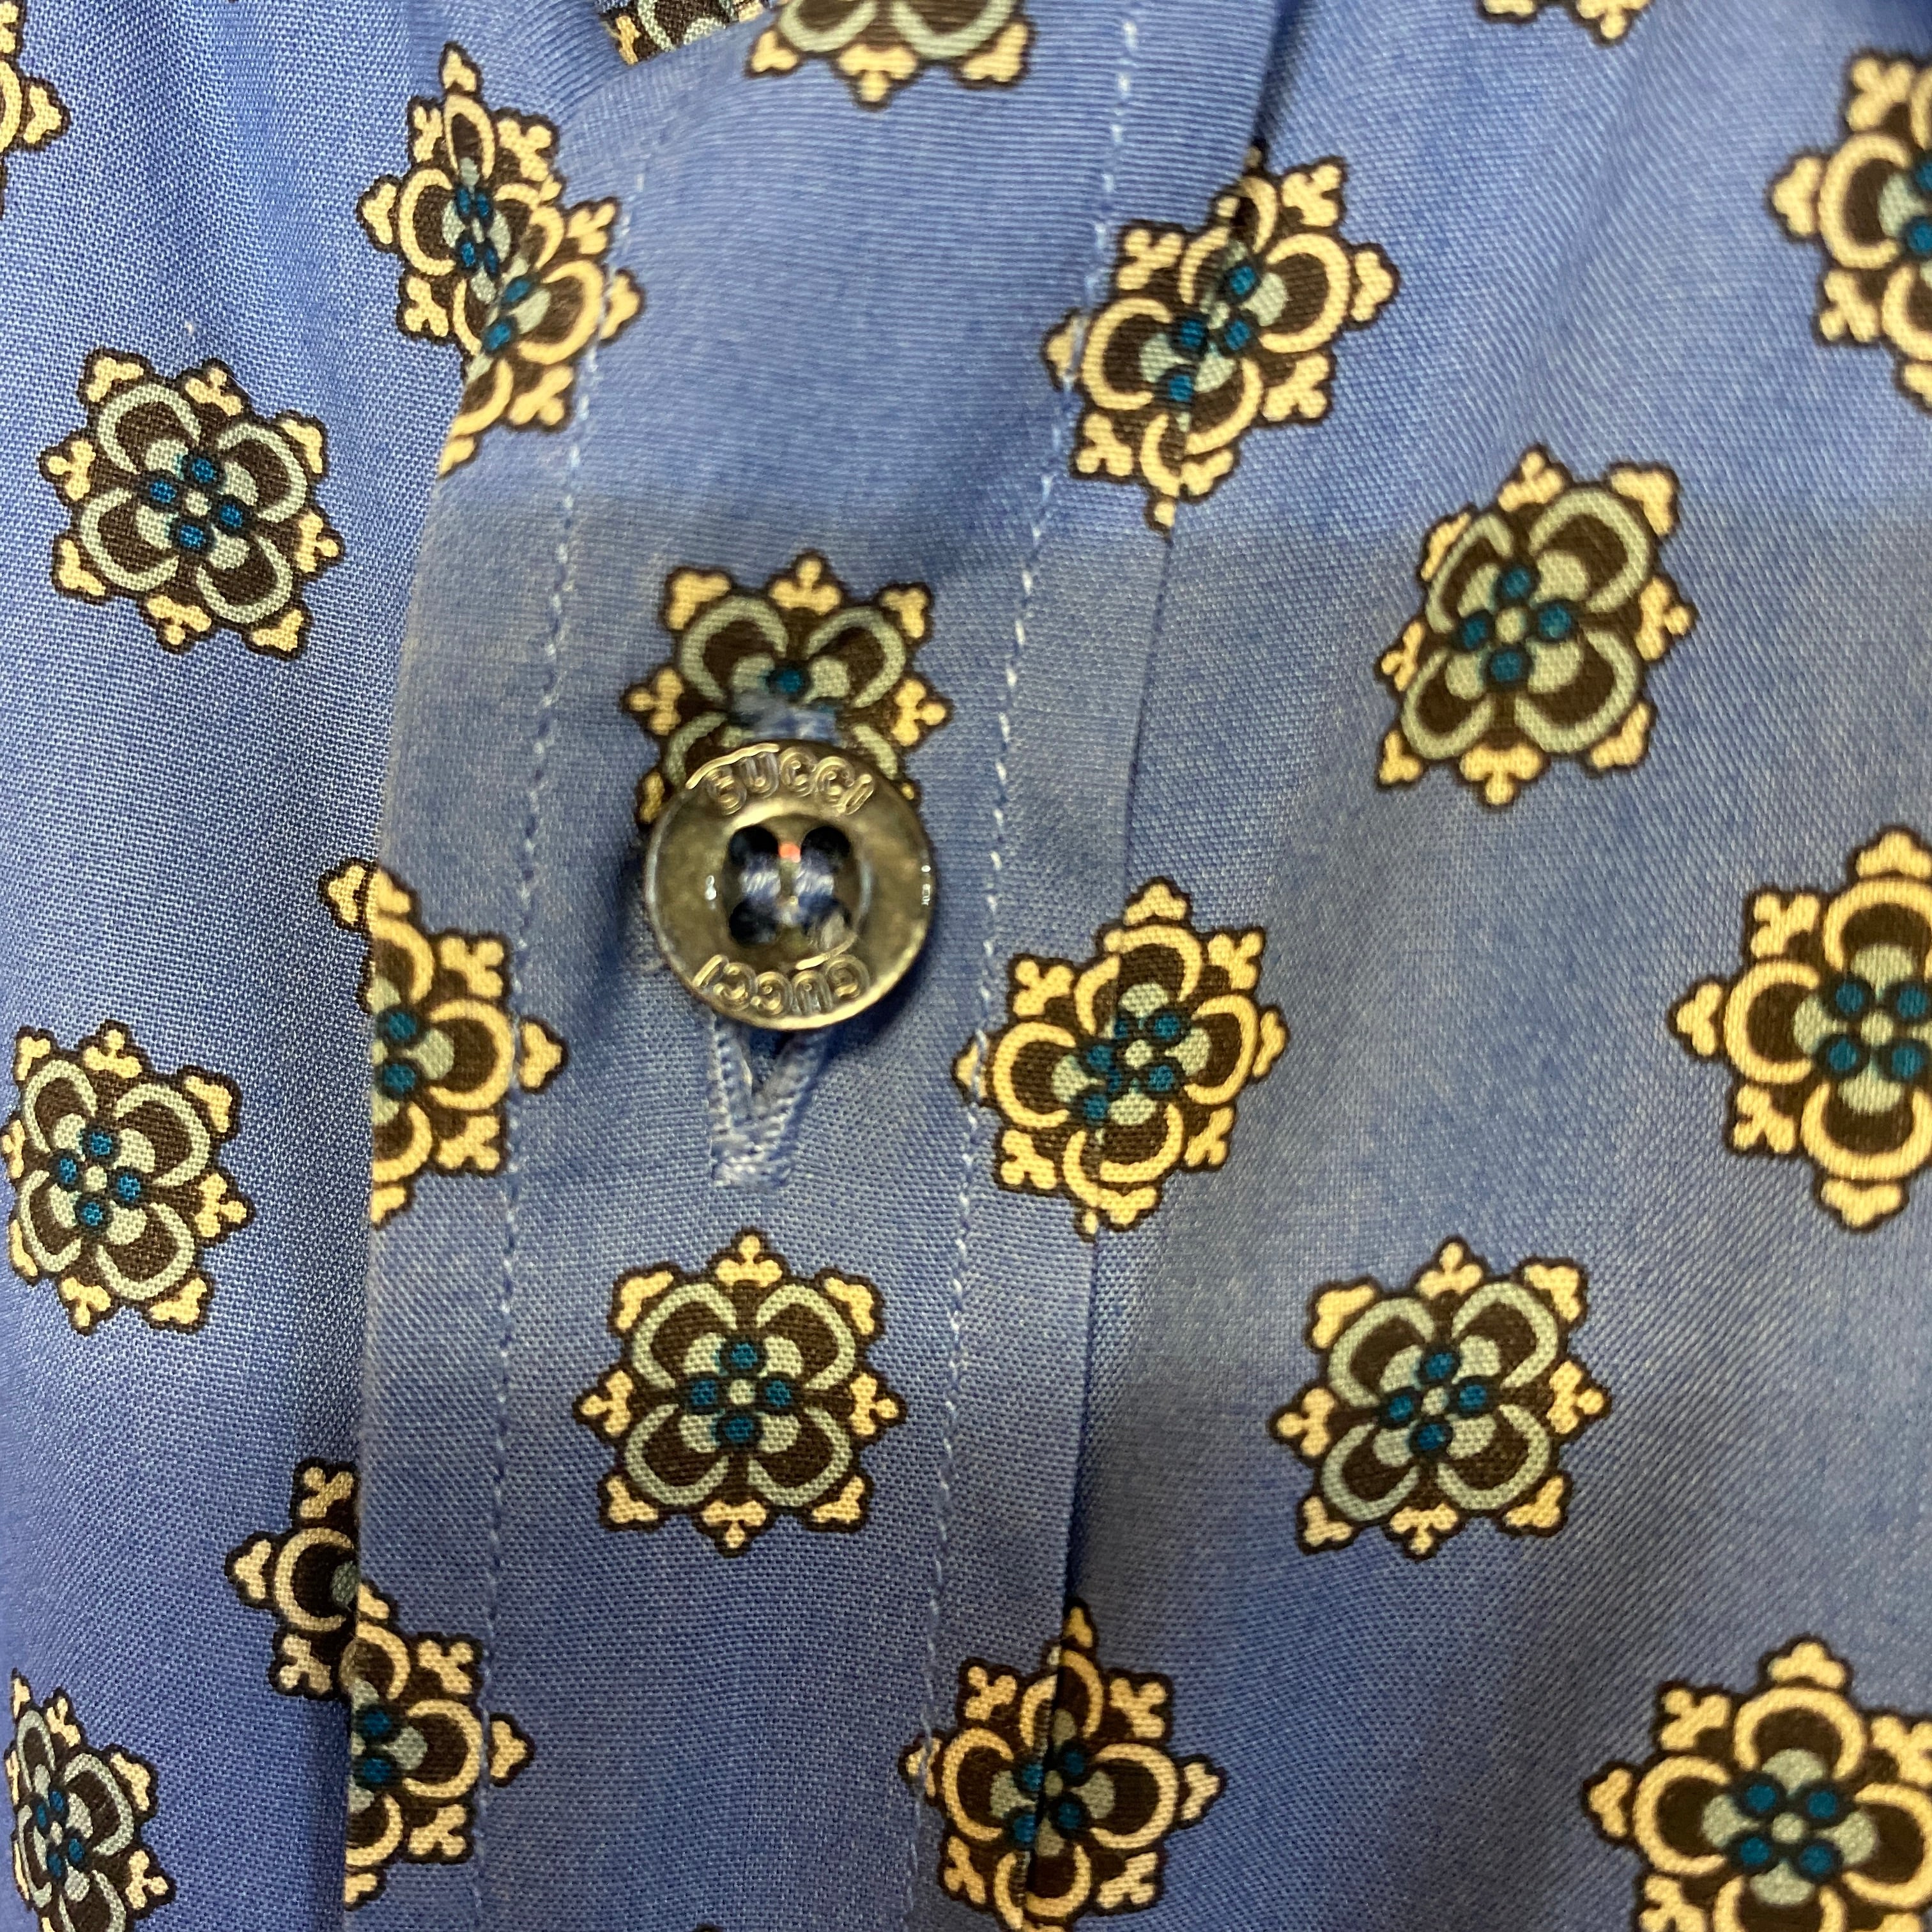 GUCCI patterned cotton shirt